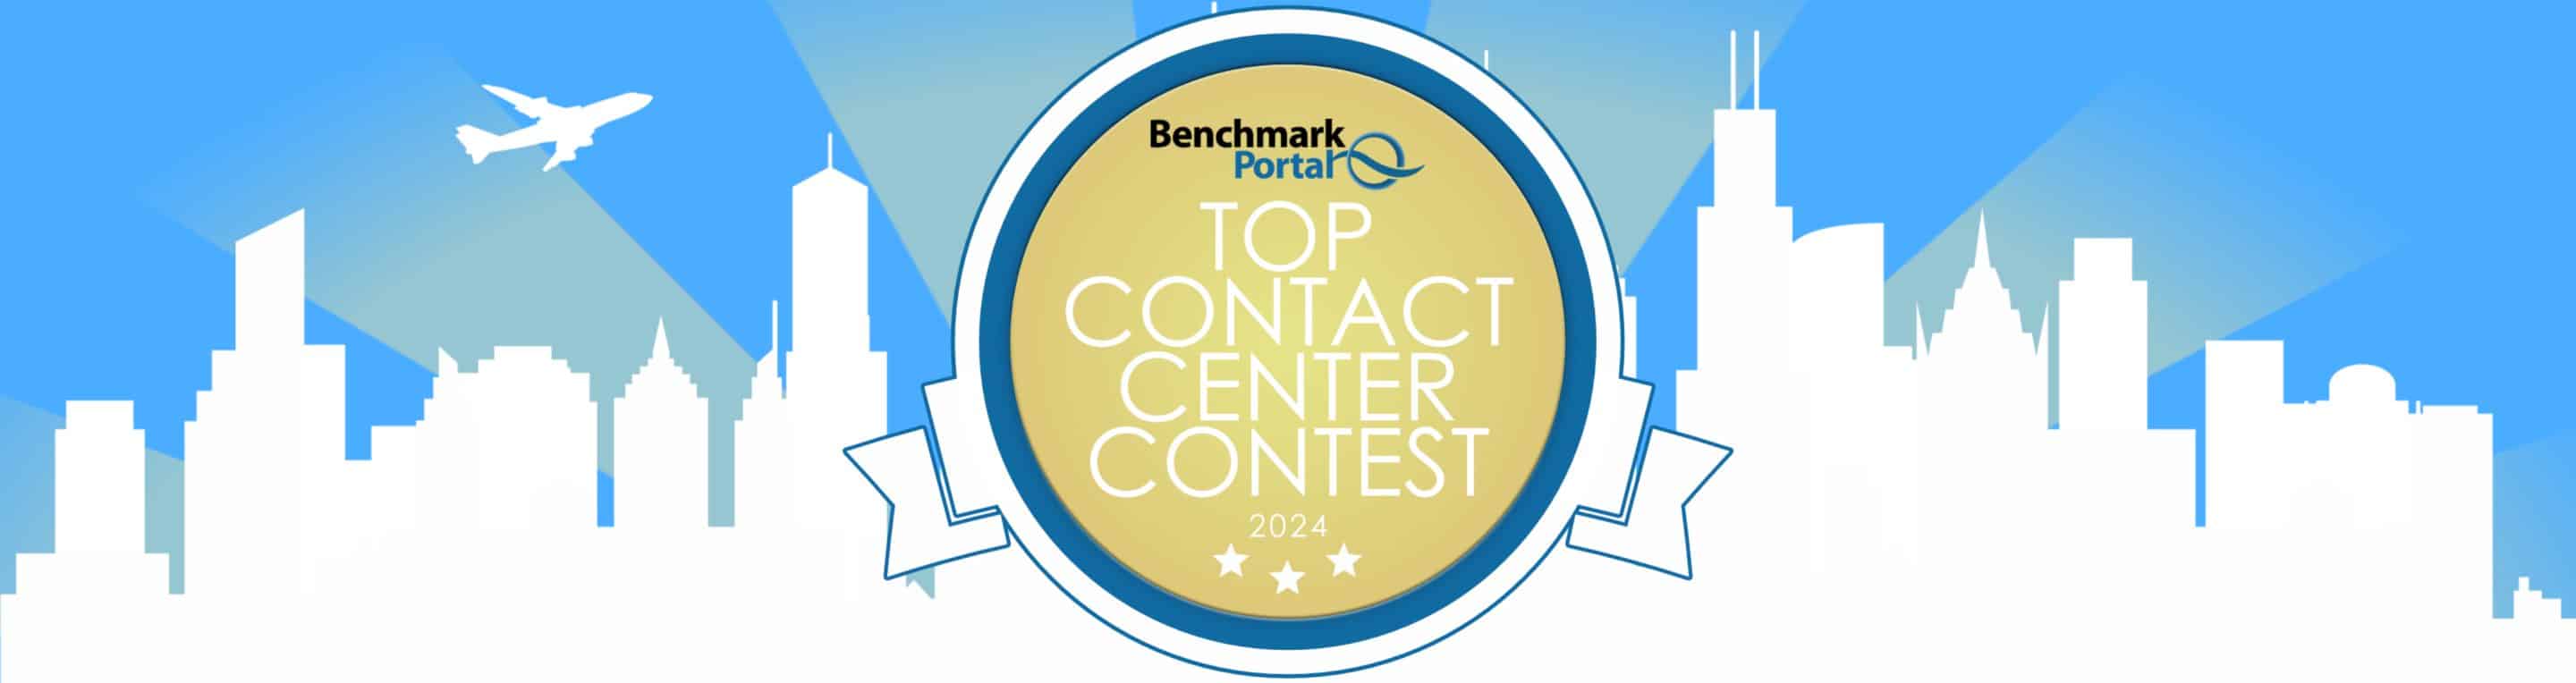 Top Contact Center Contest Header